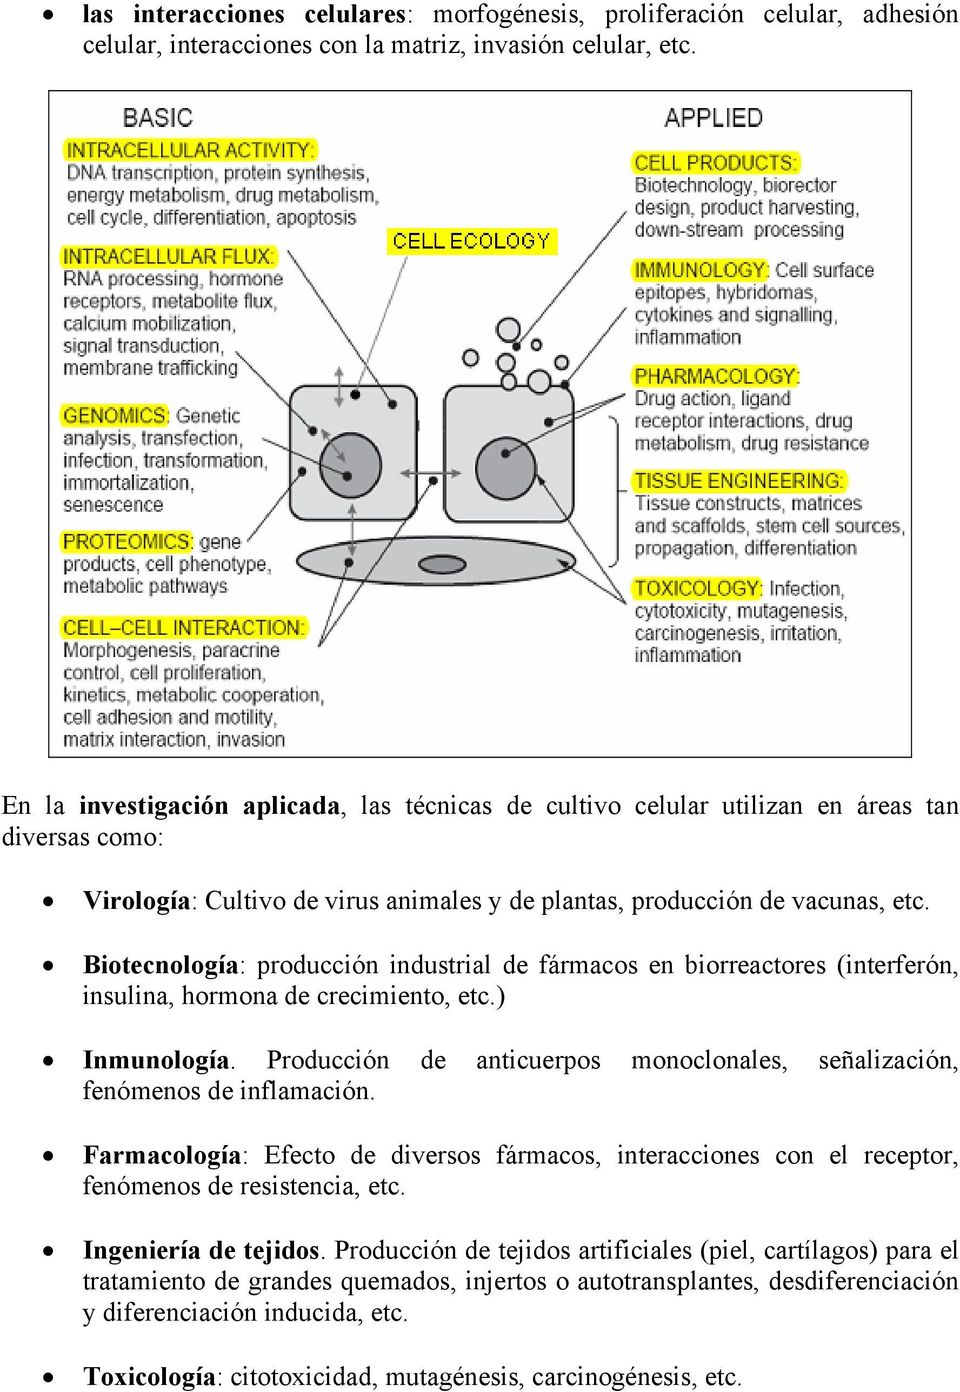 Biotecnología: producción industrial de fármacos en biorreactores (interferón, insulina, hormona de crecimiento, etc.) Inmunología.